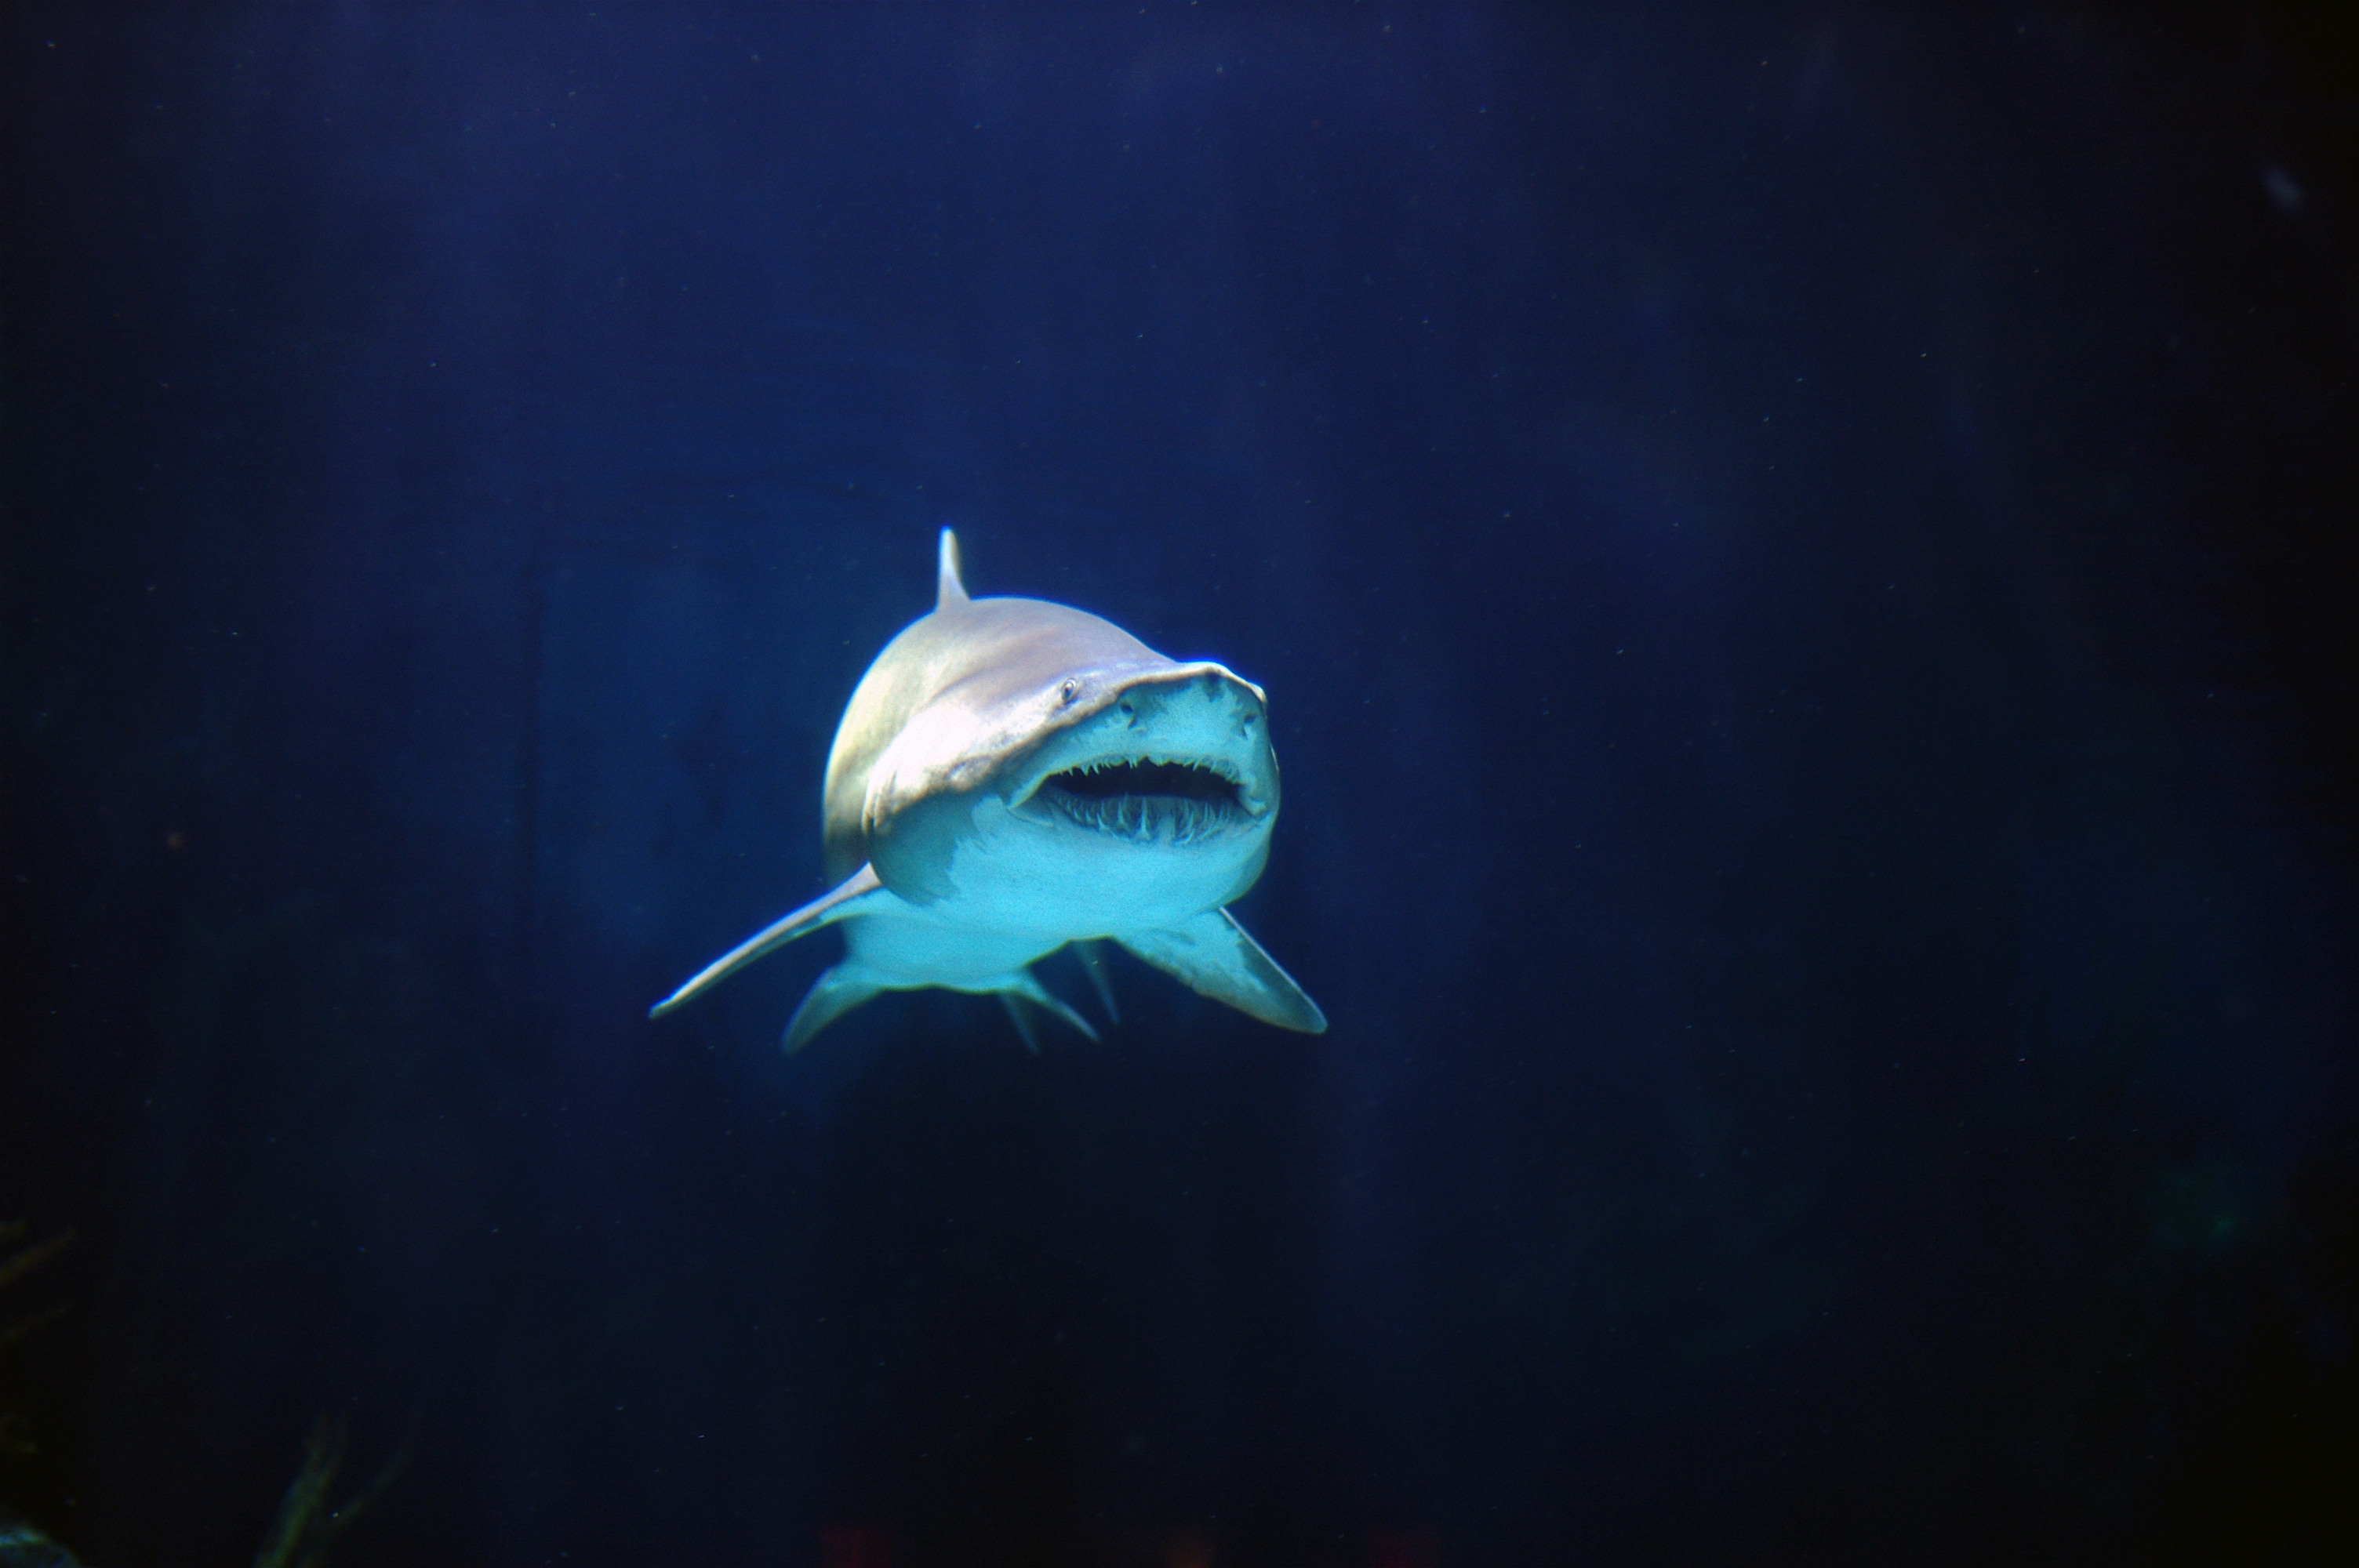 フリー画像 動物写真 魚類 鮫 サメ フリー素材 画像素材なら 無料 フリー写真素材のフリーフォト